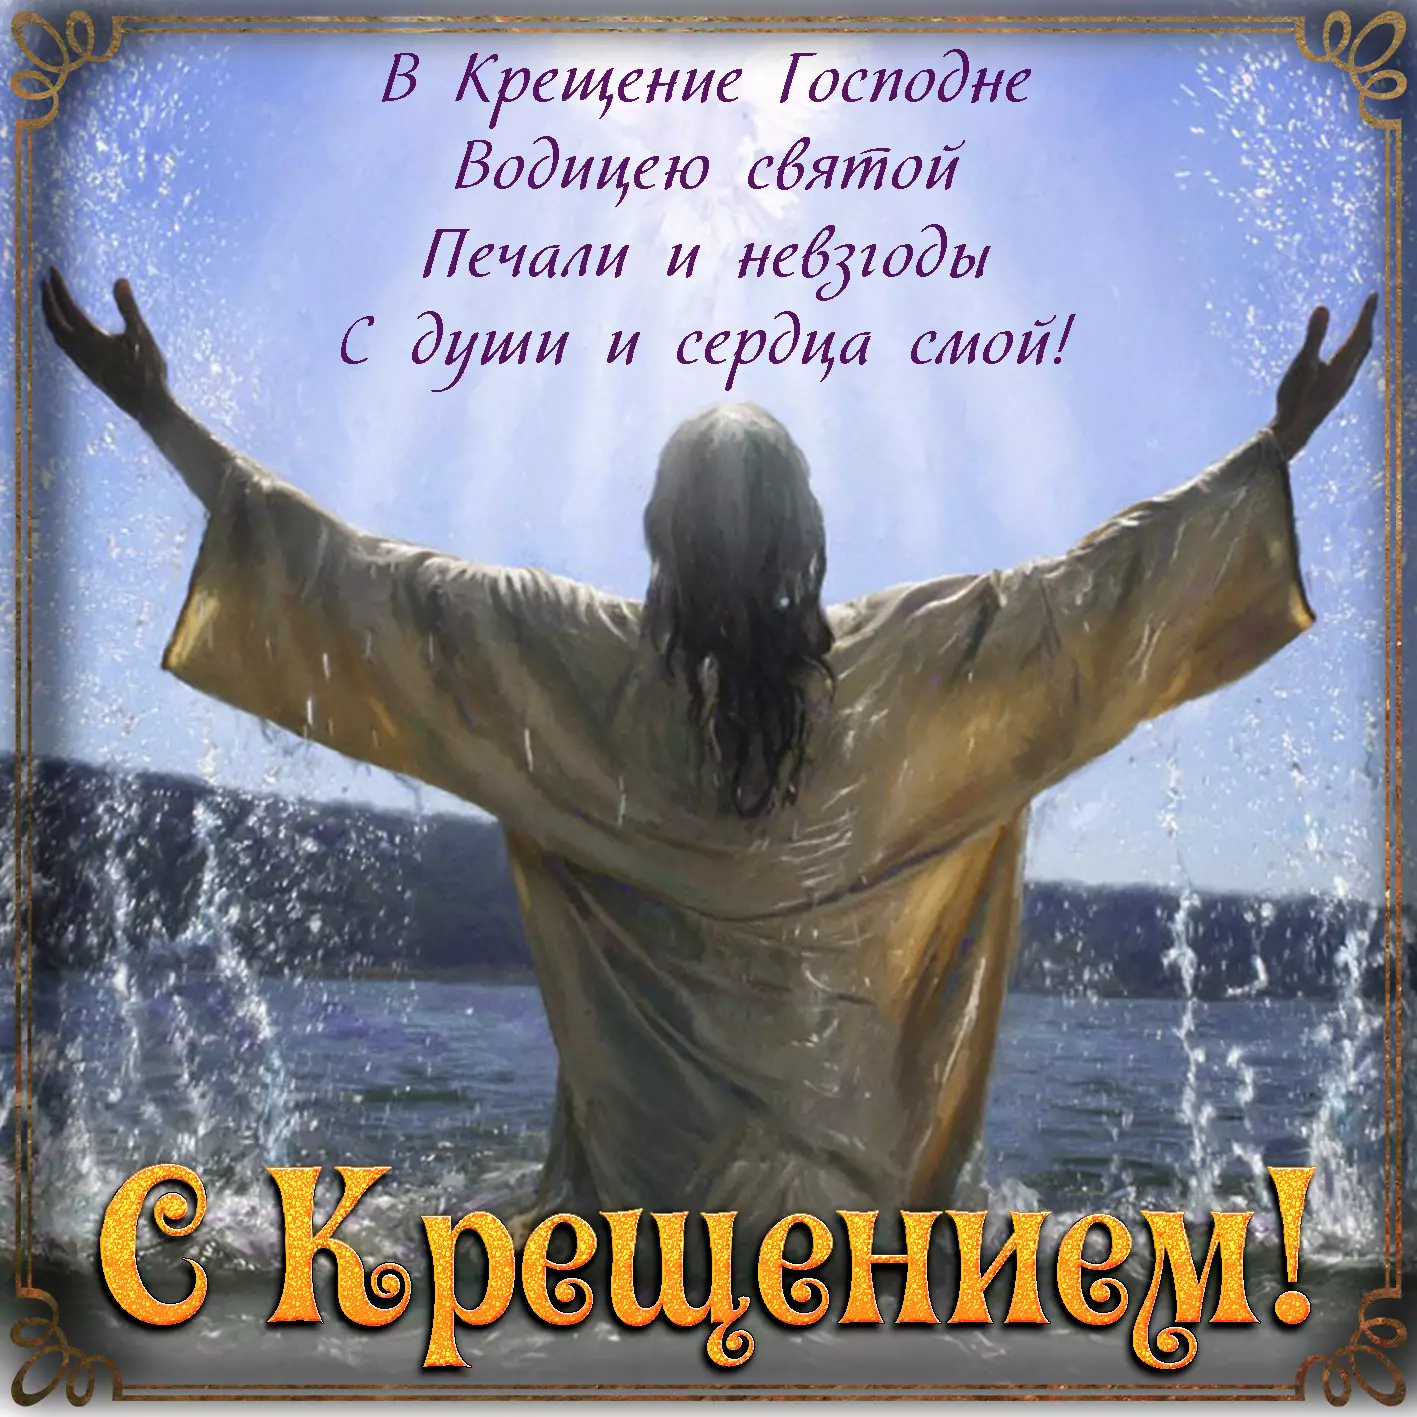 Крещение Господне: картинки и поздравления